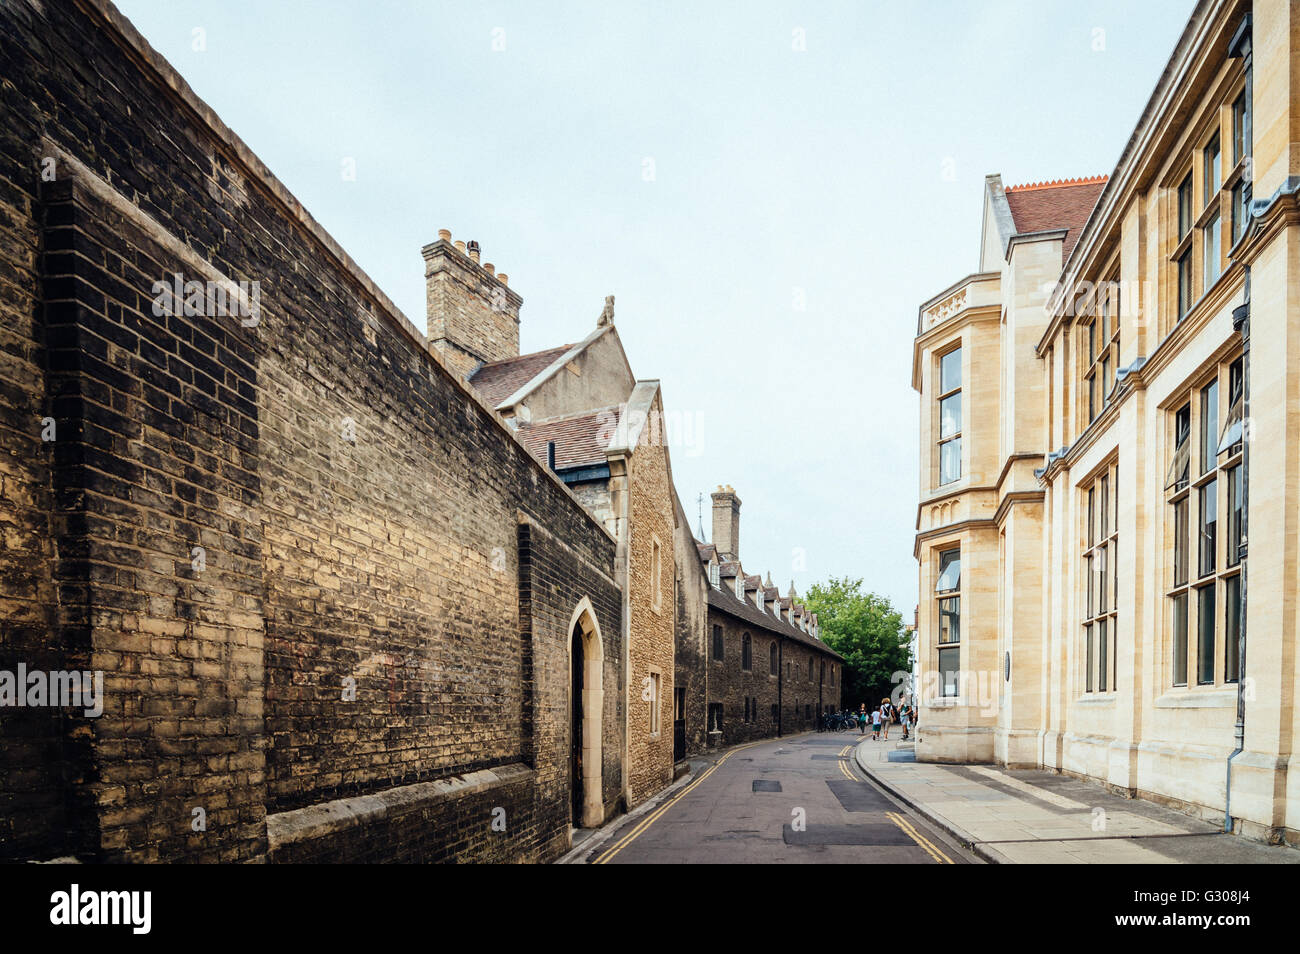 La rue vide à Cambridge avec les bâtiments en brique rouge un jour nuageux Banque D'Images